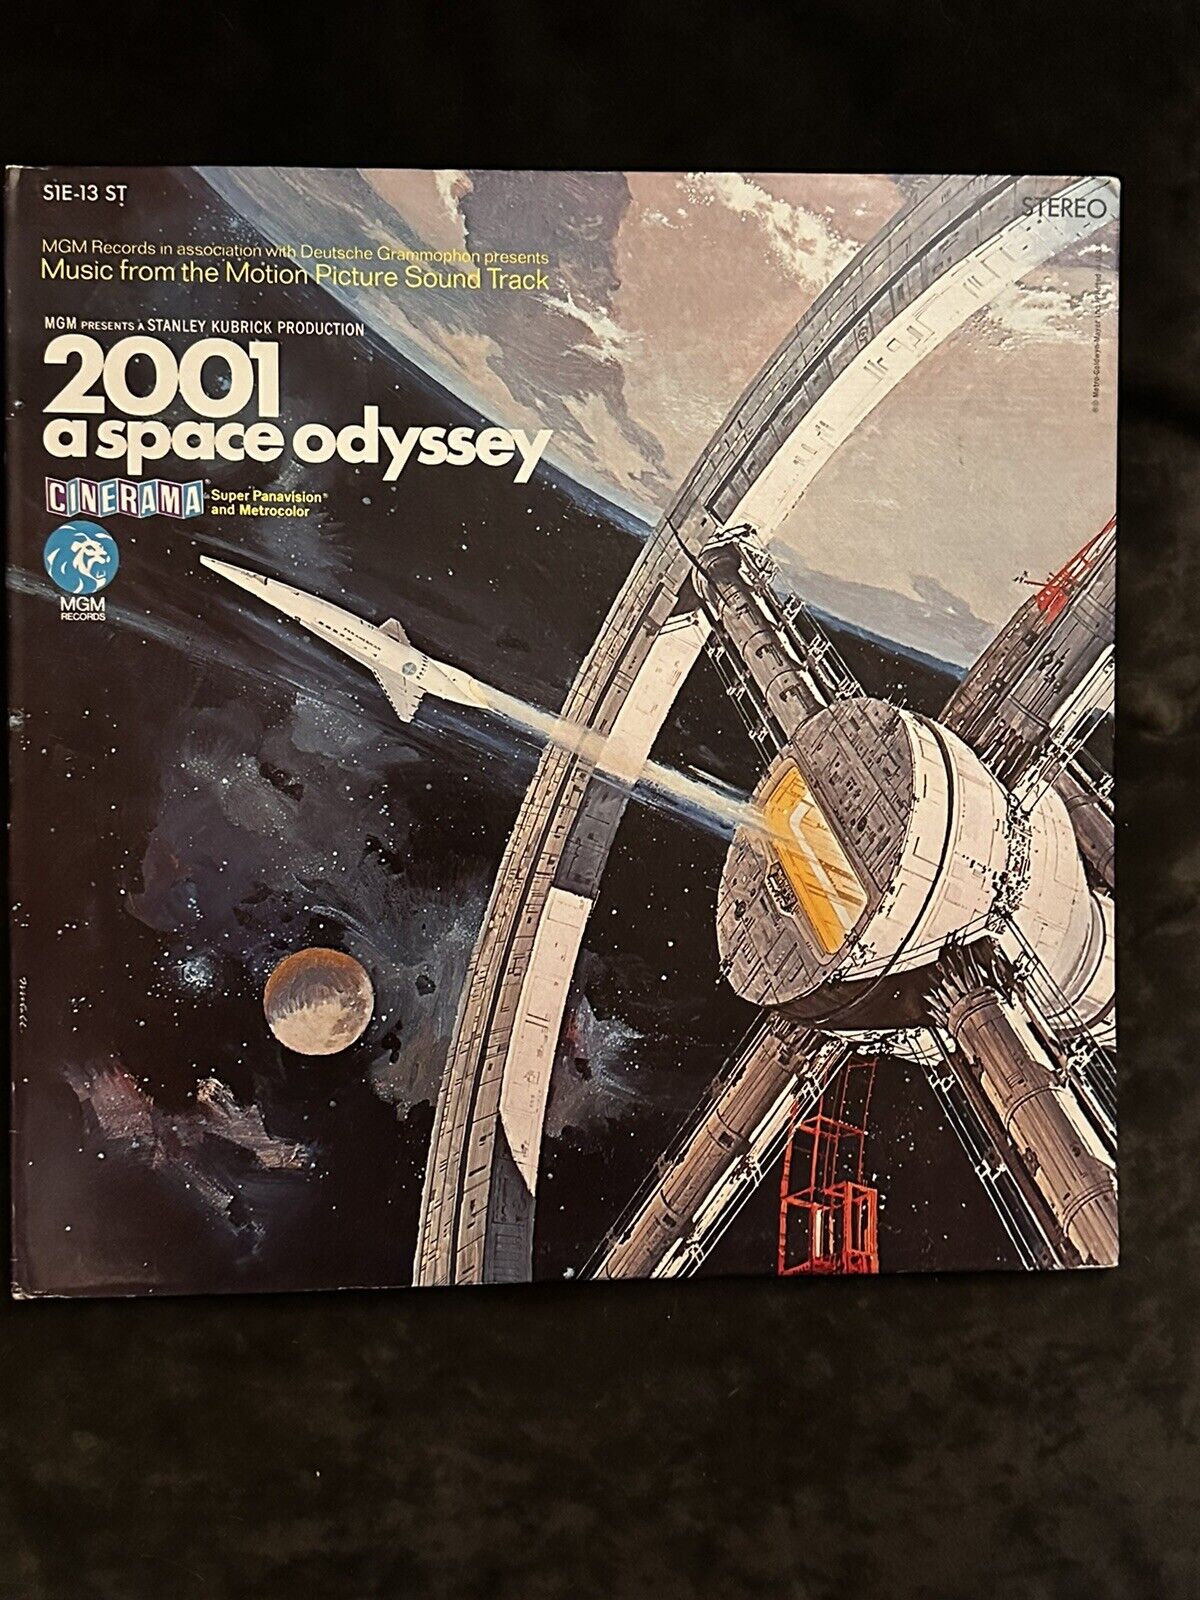 Original 1968 LP “2001: A Space Odyssey” Soundtrack (Vinyl MGM S1E-13).